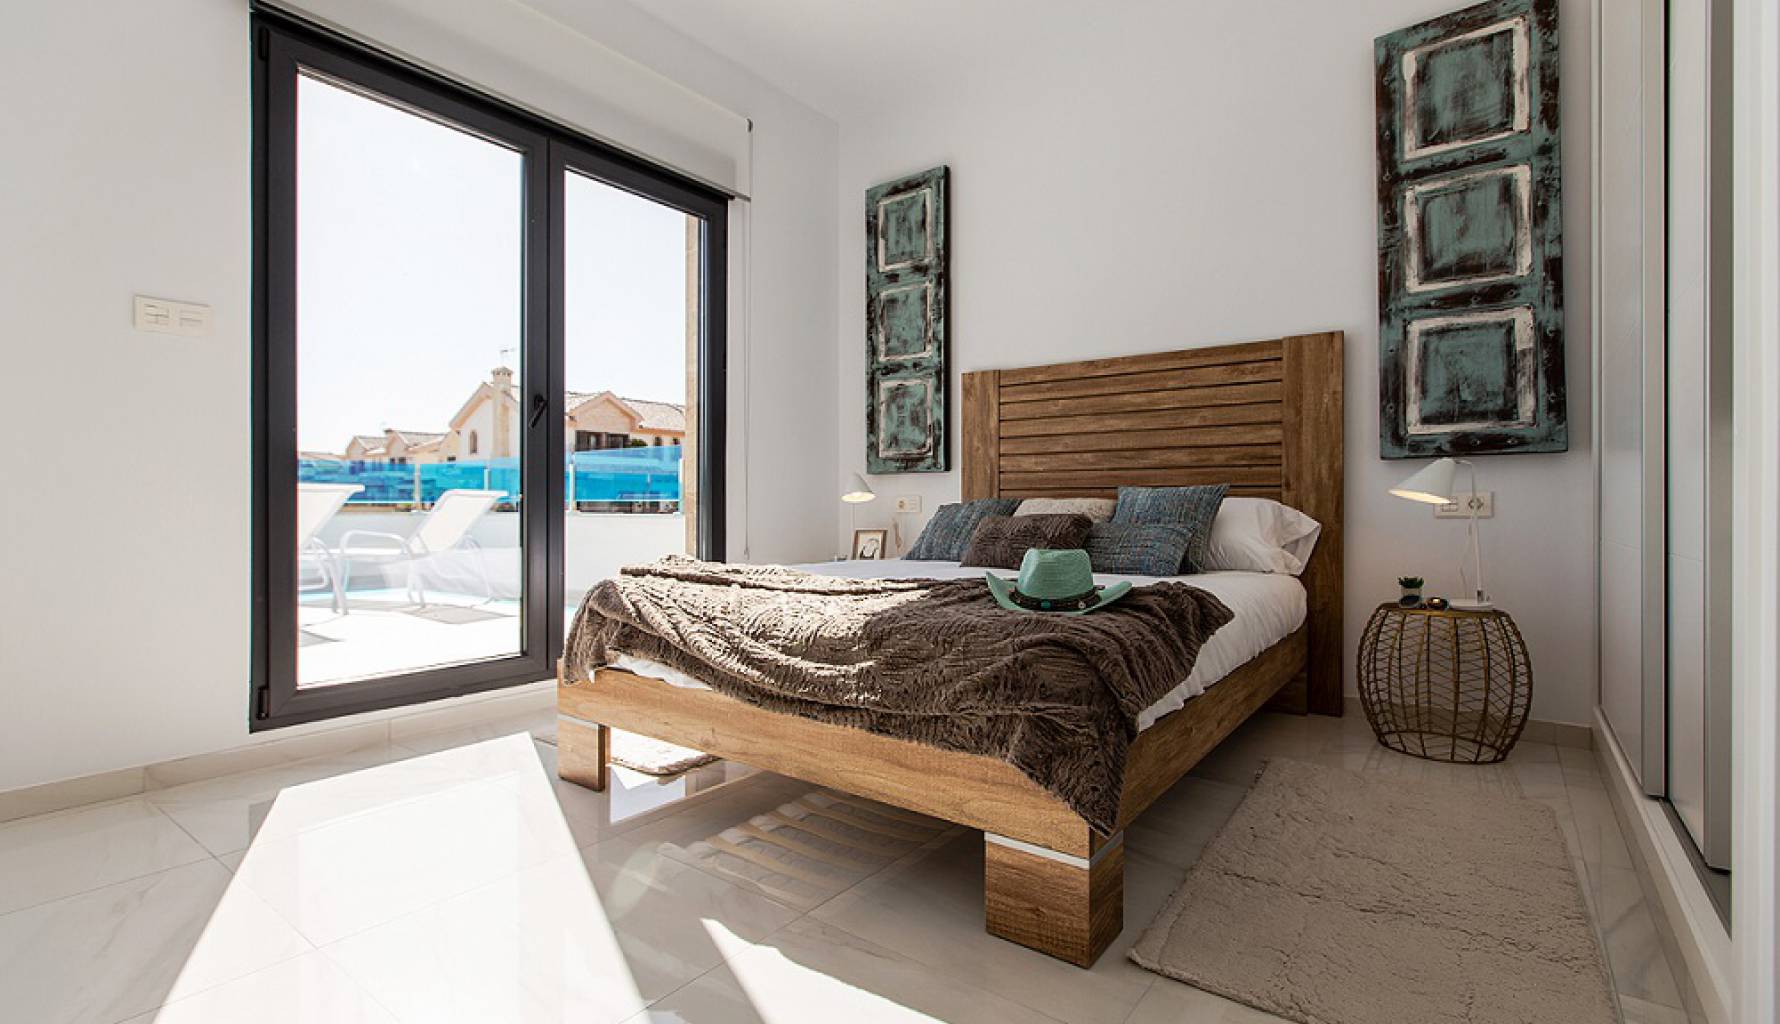 Dormitorio | Propiedades de obra nueva en venta en Bigastro, Alicante